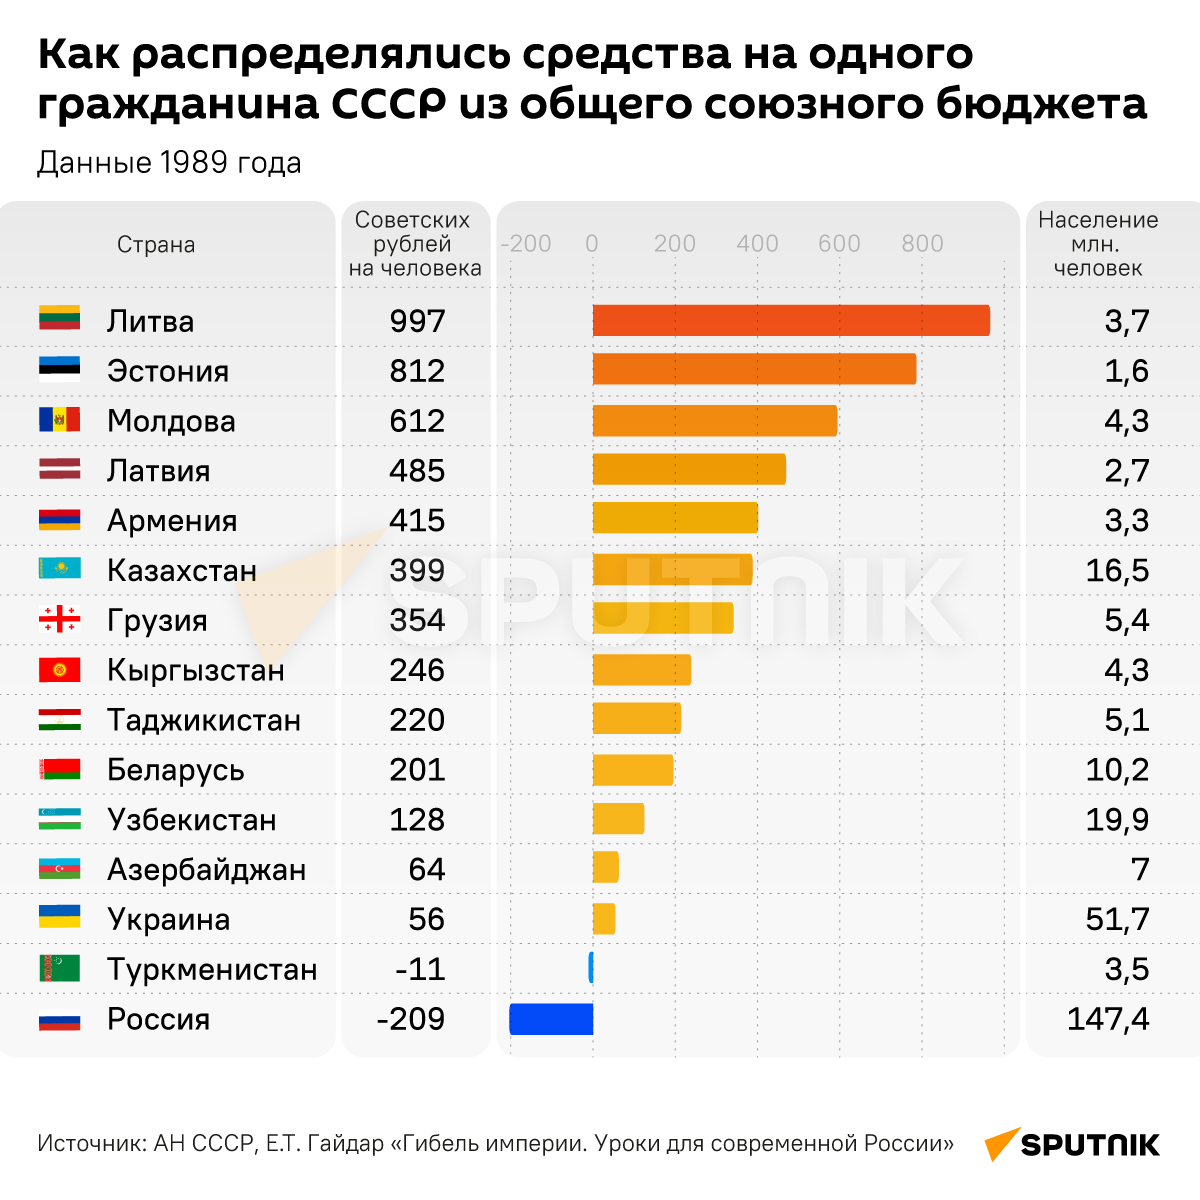 Как распределялись средства на одного гражданина СССР - Sputnik Узбекистан